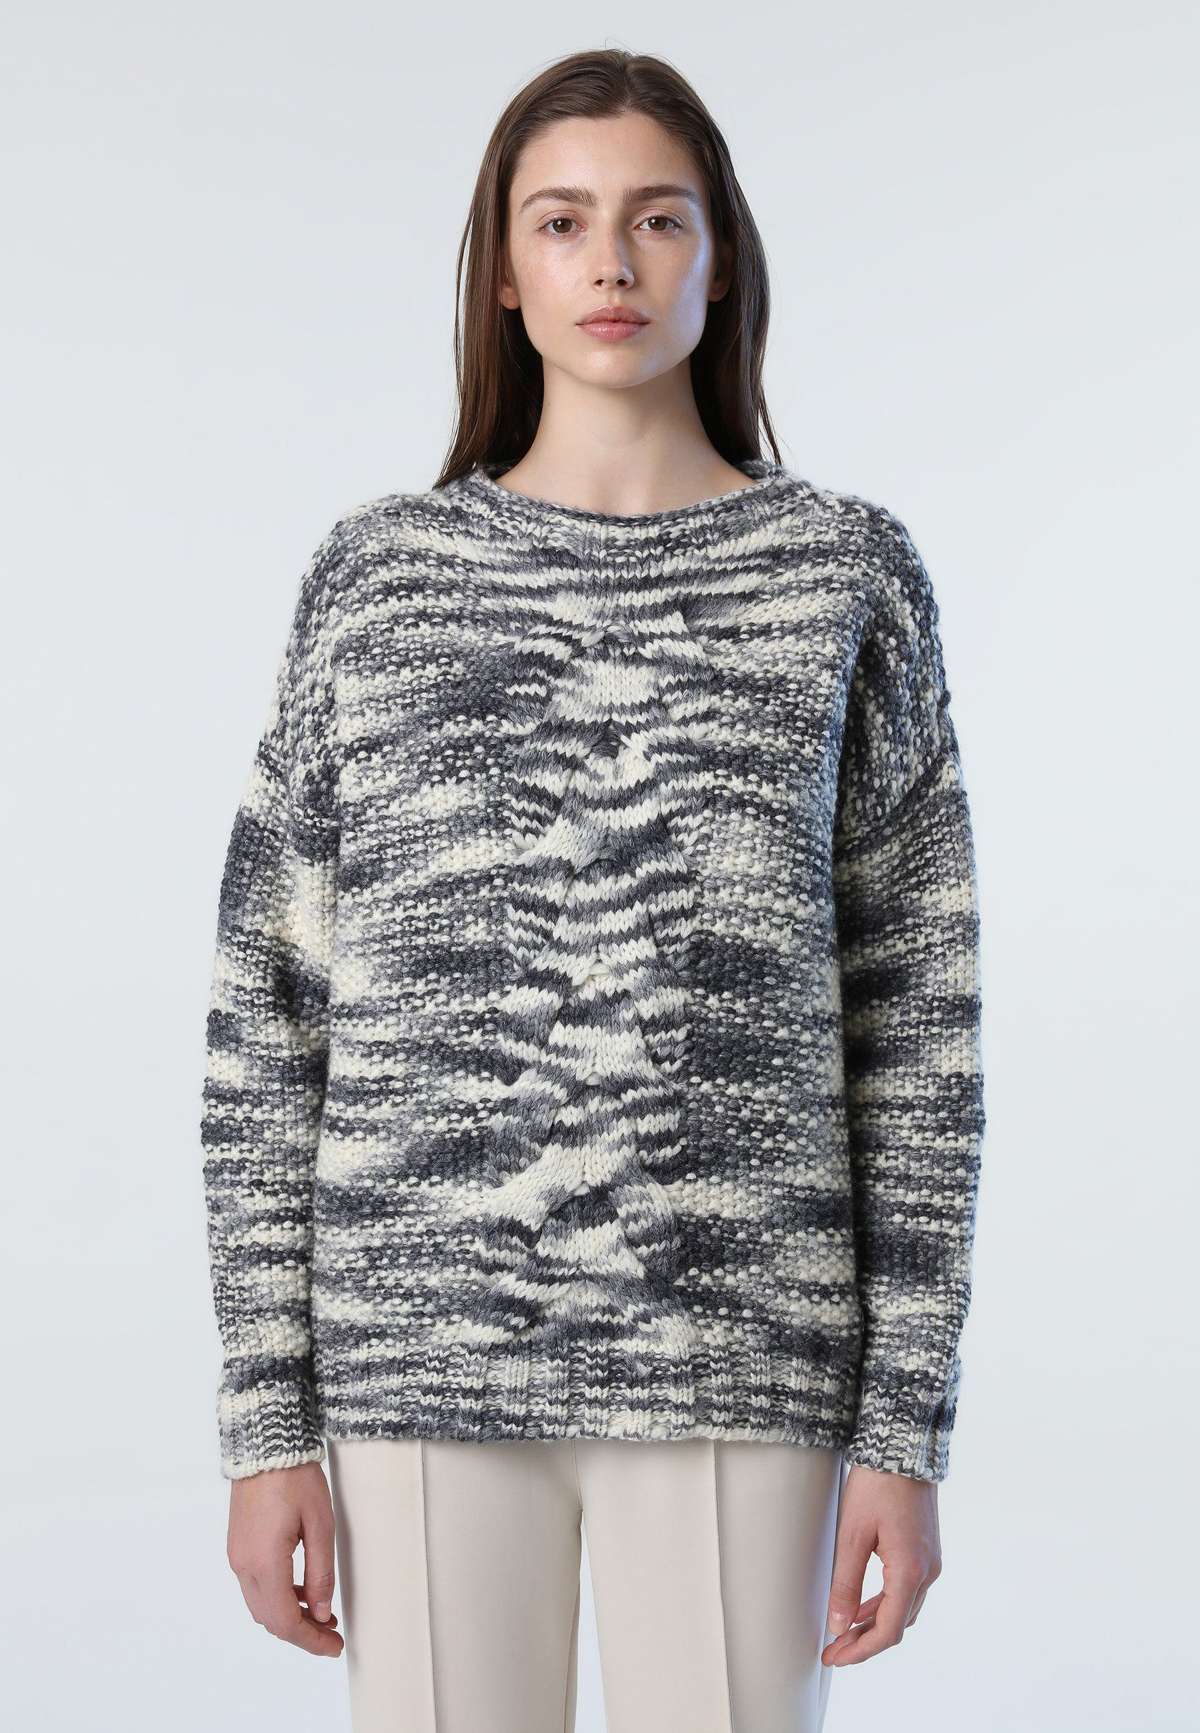 Вязаный свитер, вязаный свитер с круглым вырезом, джемпер косой вязки.